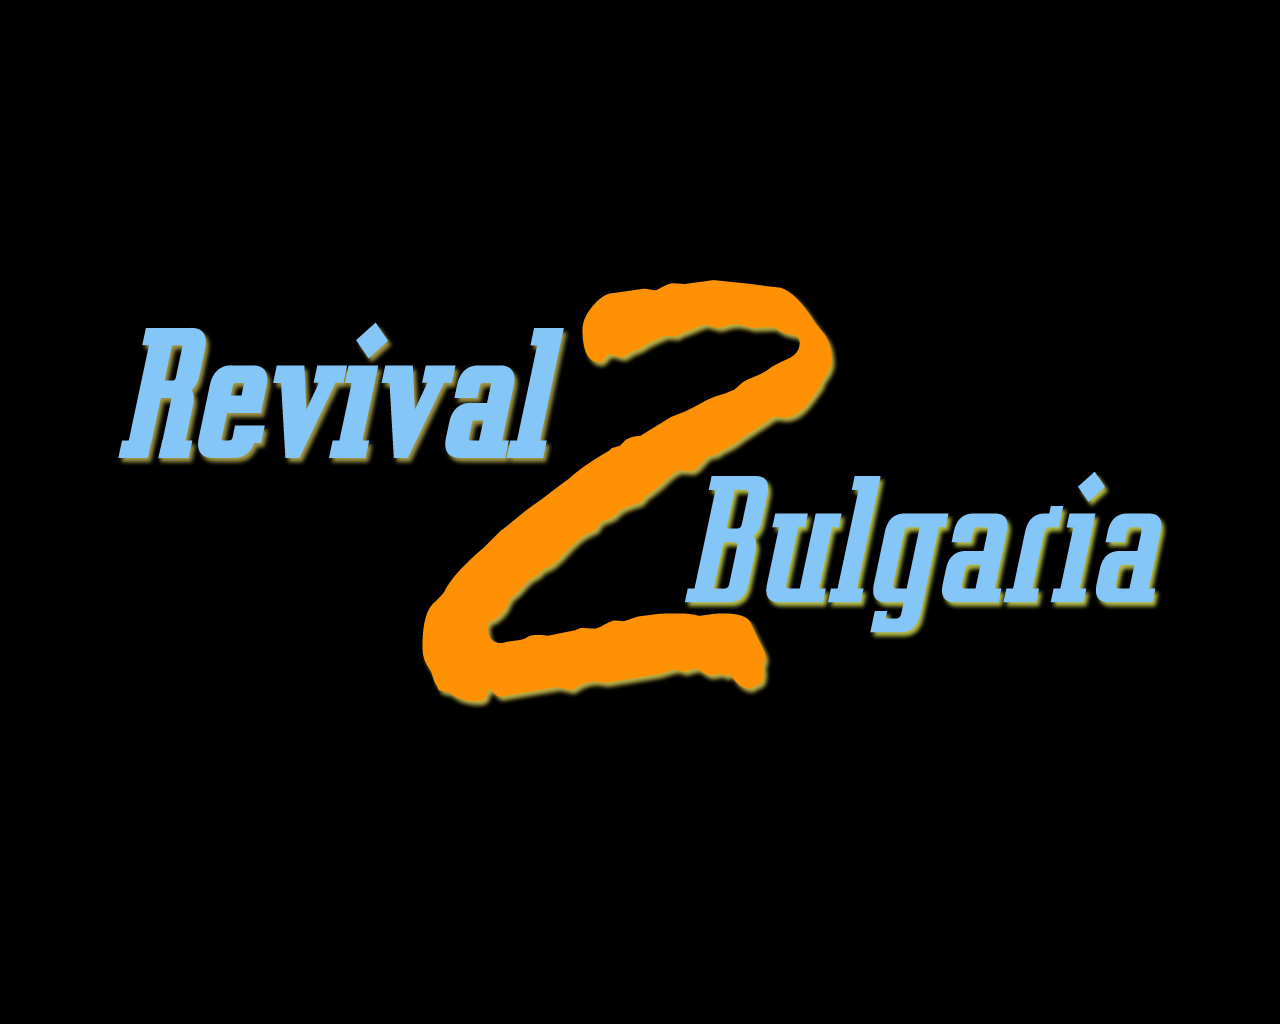 revival-bulgaria-2.jpg